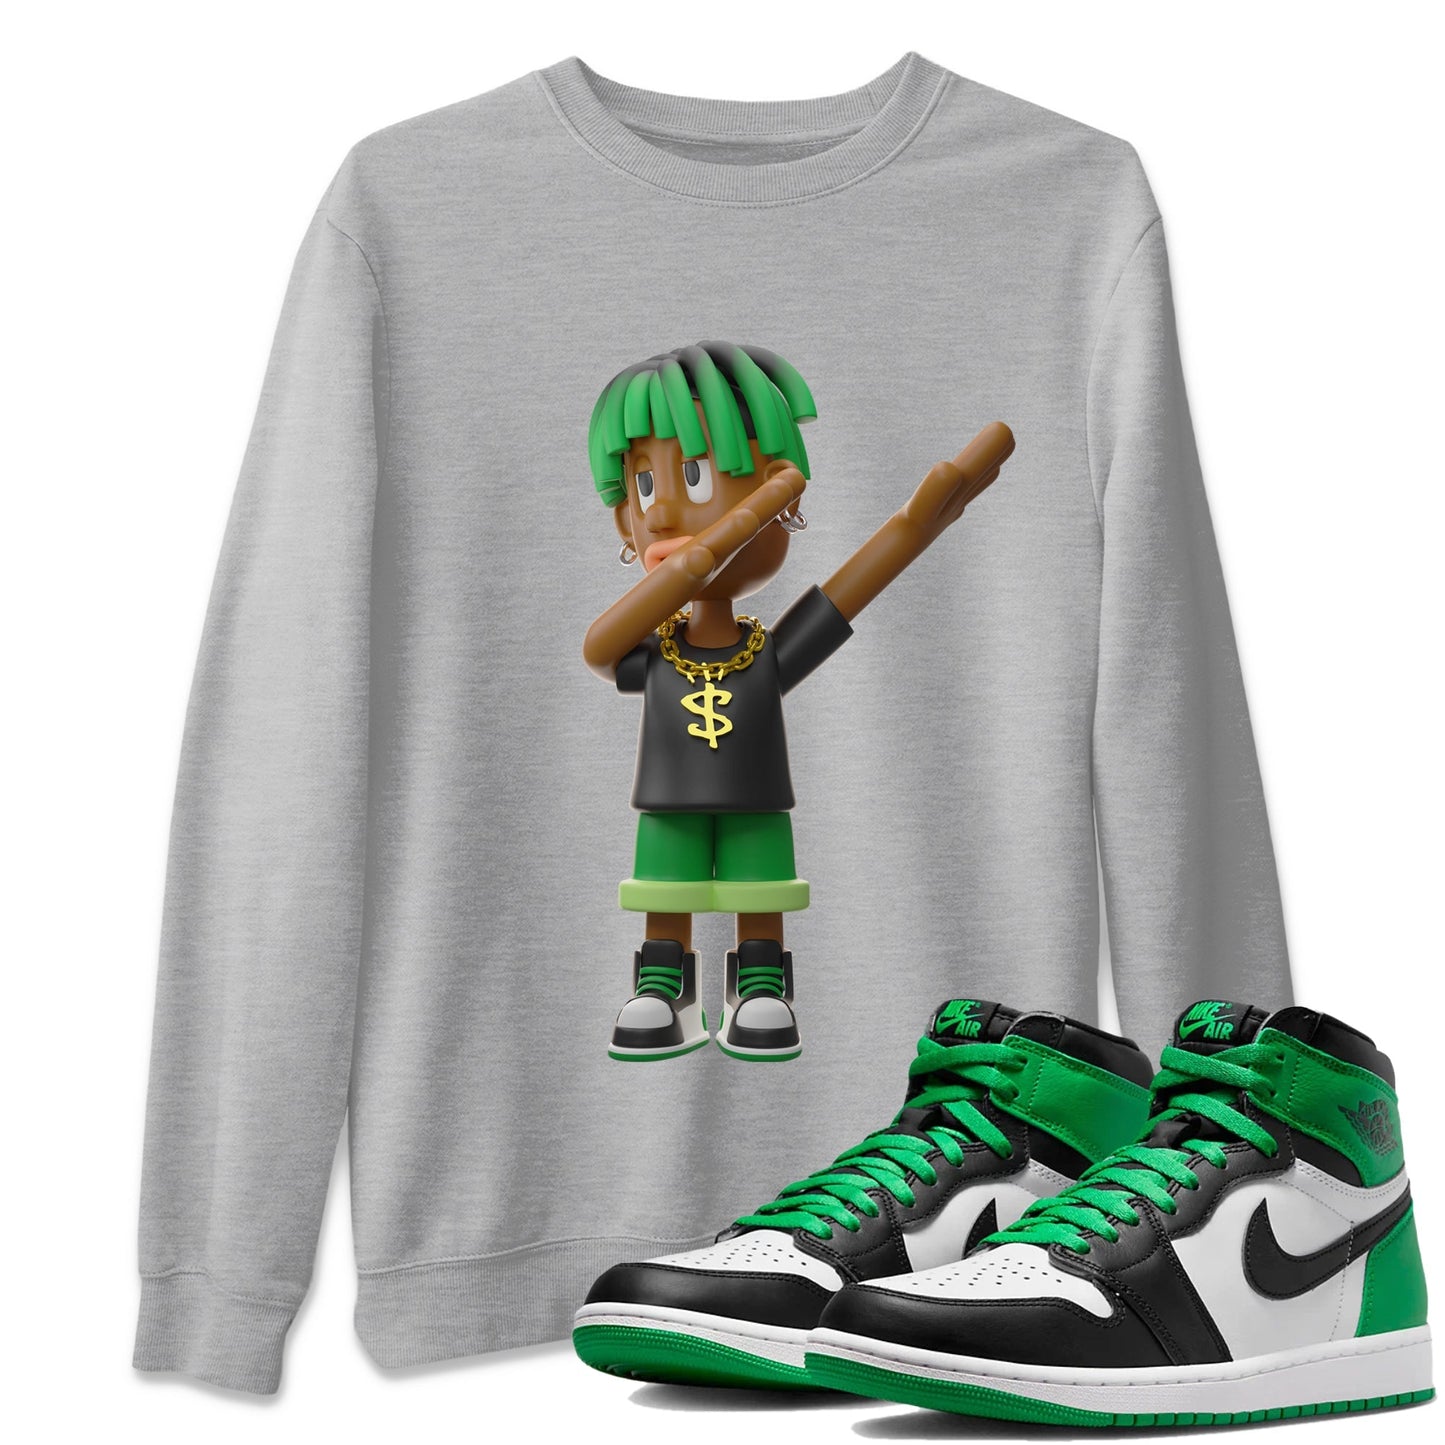 Air Jordan 1 Celtics Sneaker Tees Drip Gear Zone Get'em Boy Sneaker Tees AJ1 High OG Lucky Green Shirt Unisex Shirts Heather Grey 1